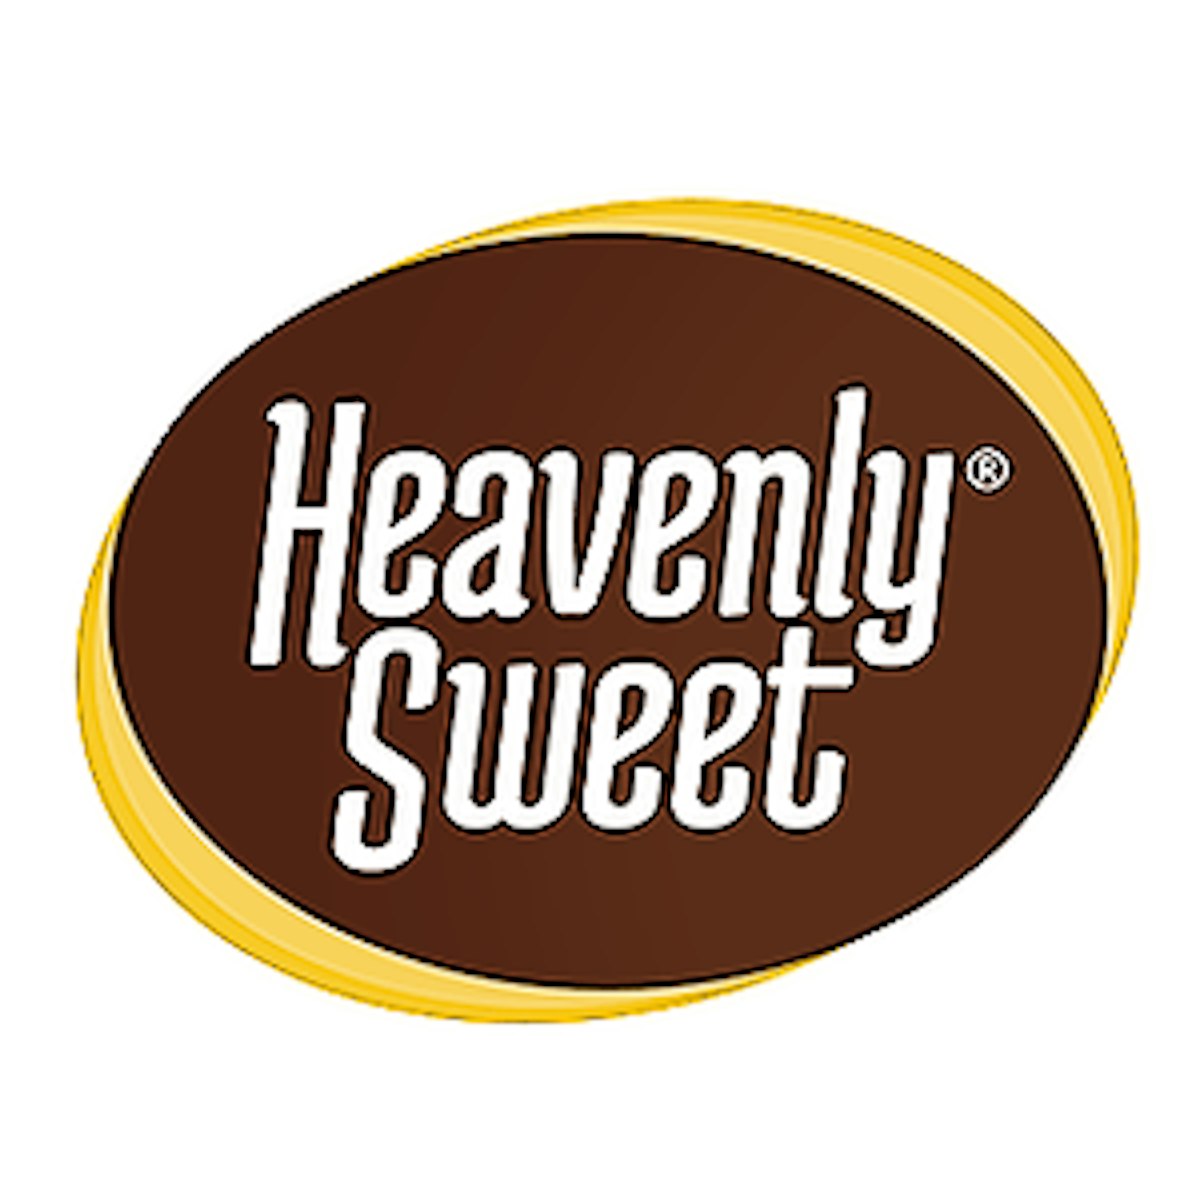 Heavenly Sweet: We make edibles easy!